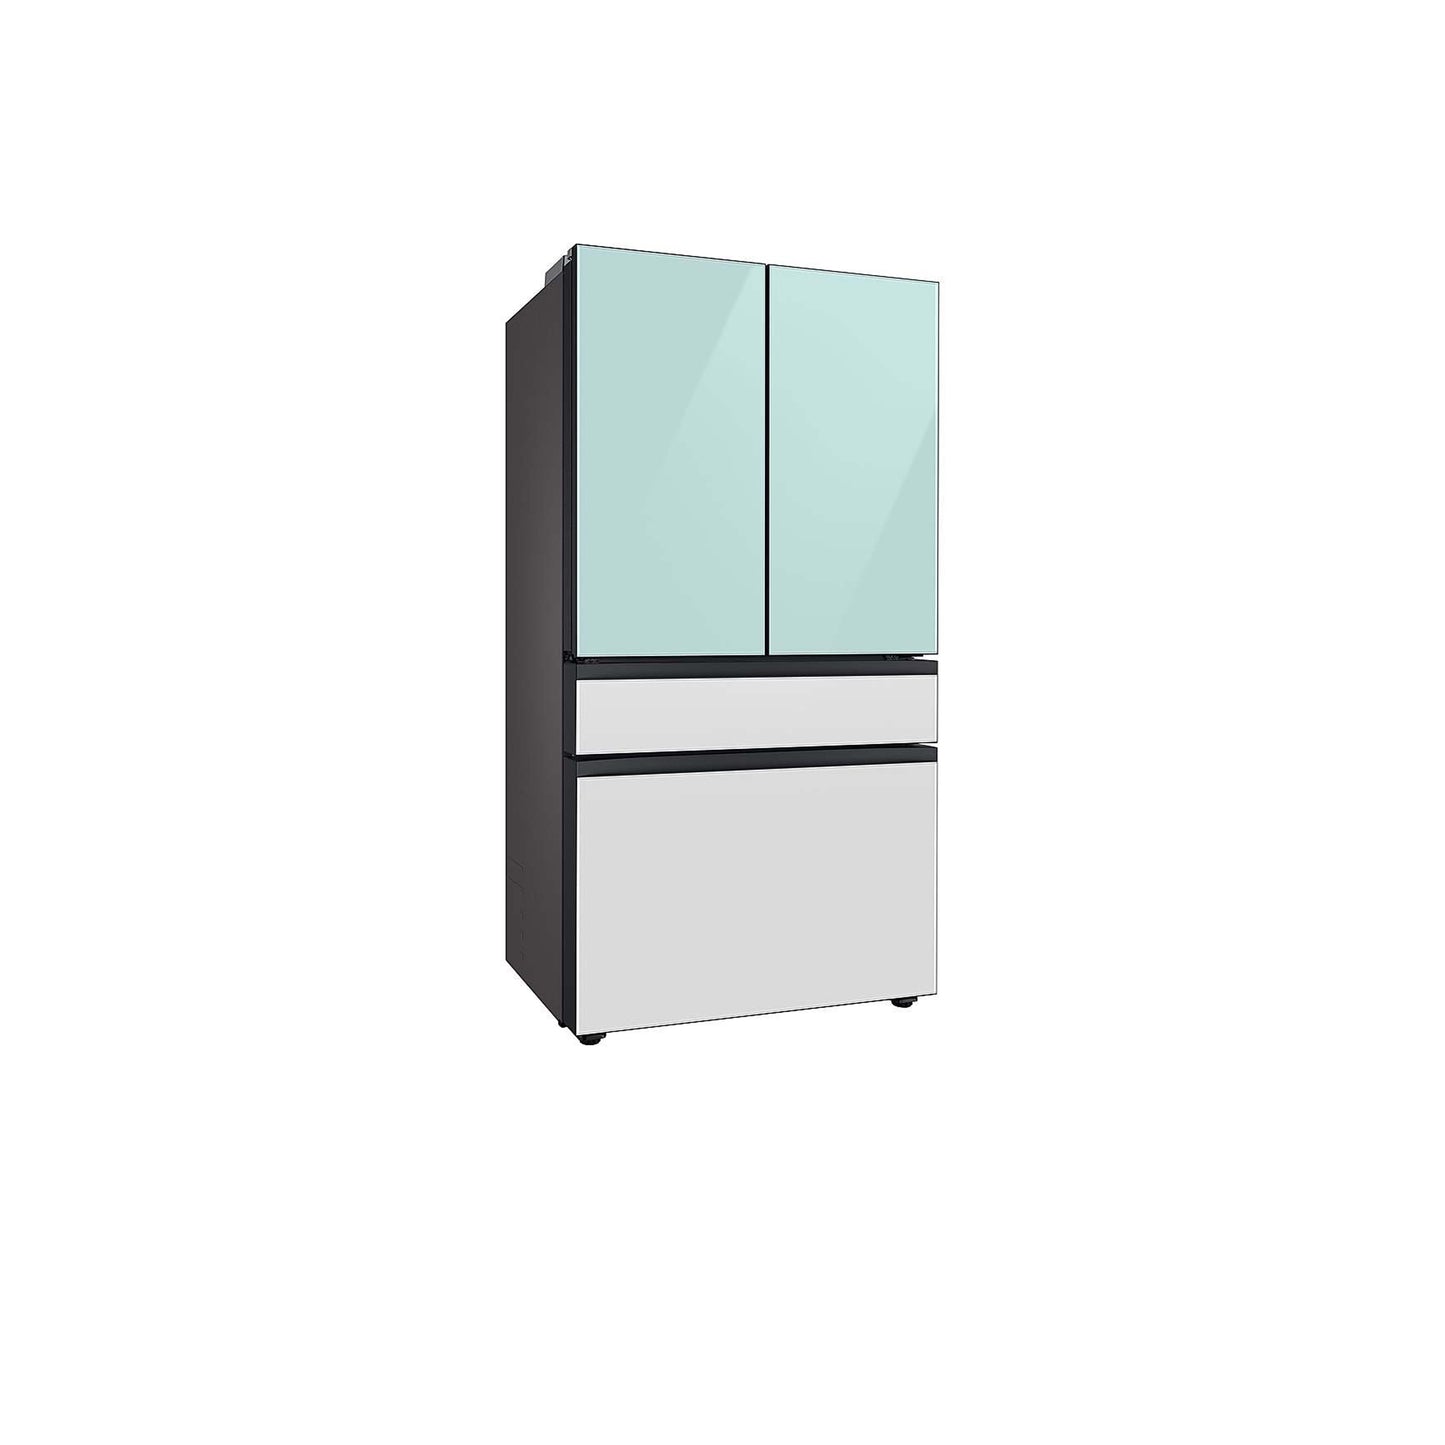 Bespoke 4-Door French Door Refrigerator (23 cu. ft.) with Customizable Door Panel Colors and Beverage Center™ in Emerald Green Steel.